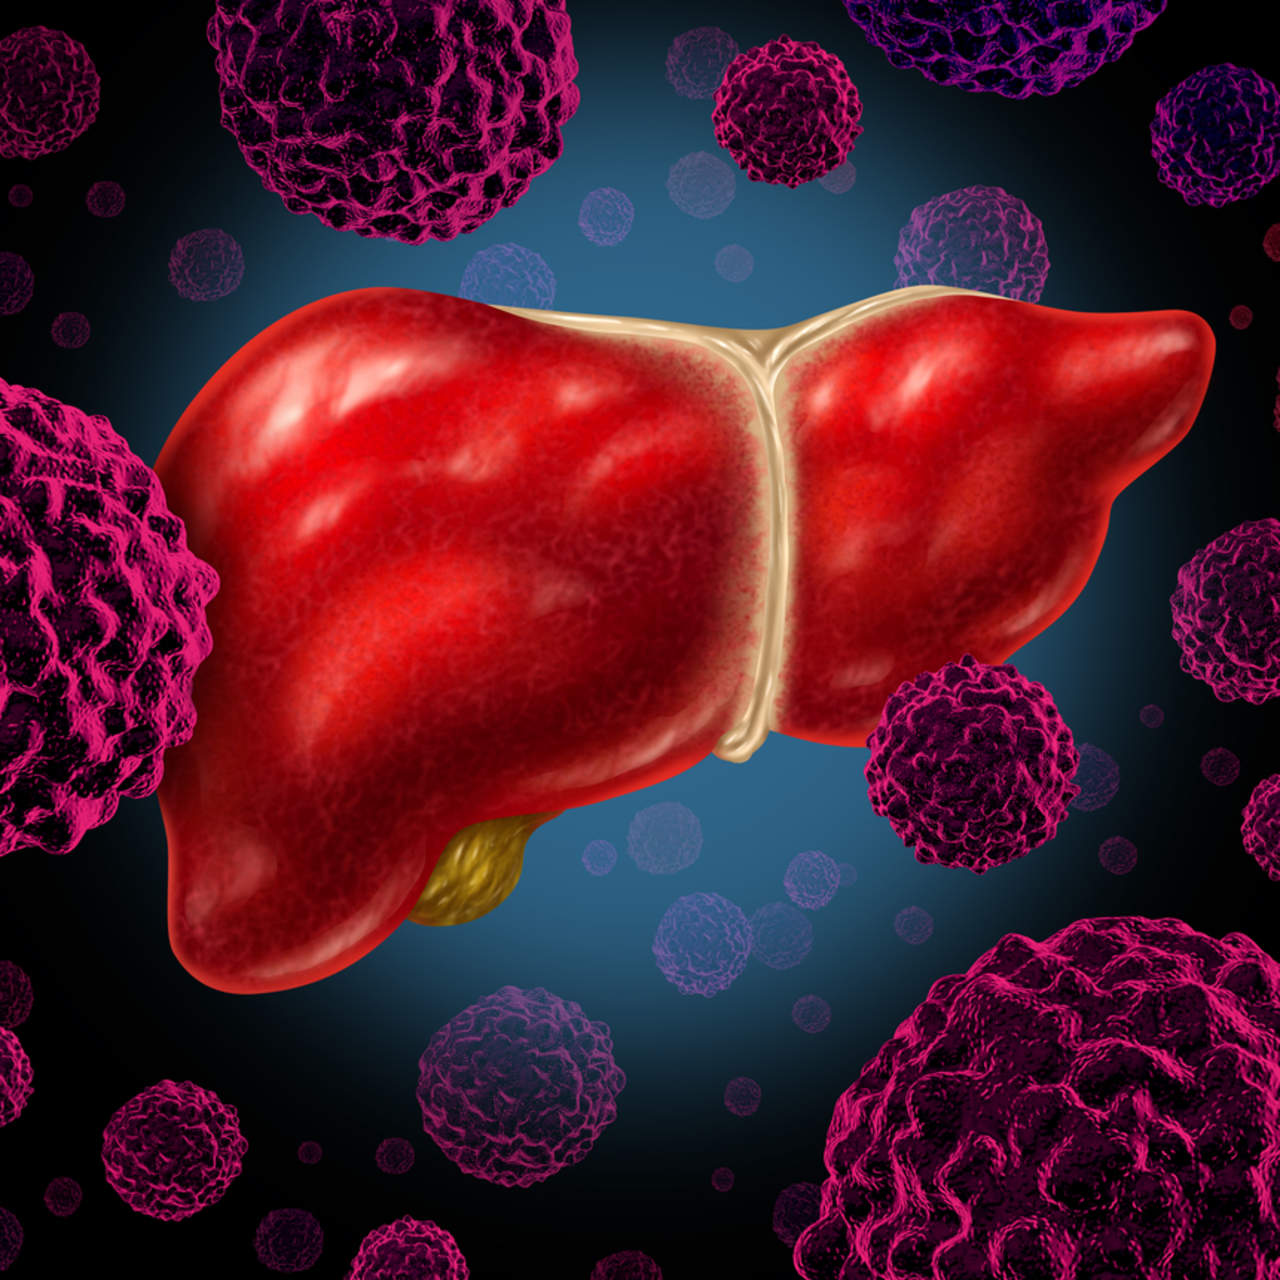 Obesidad y hepatitis aumentan incidencia de cáncer de hígado. Noticias en tiempo real